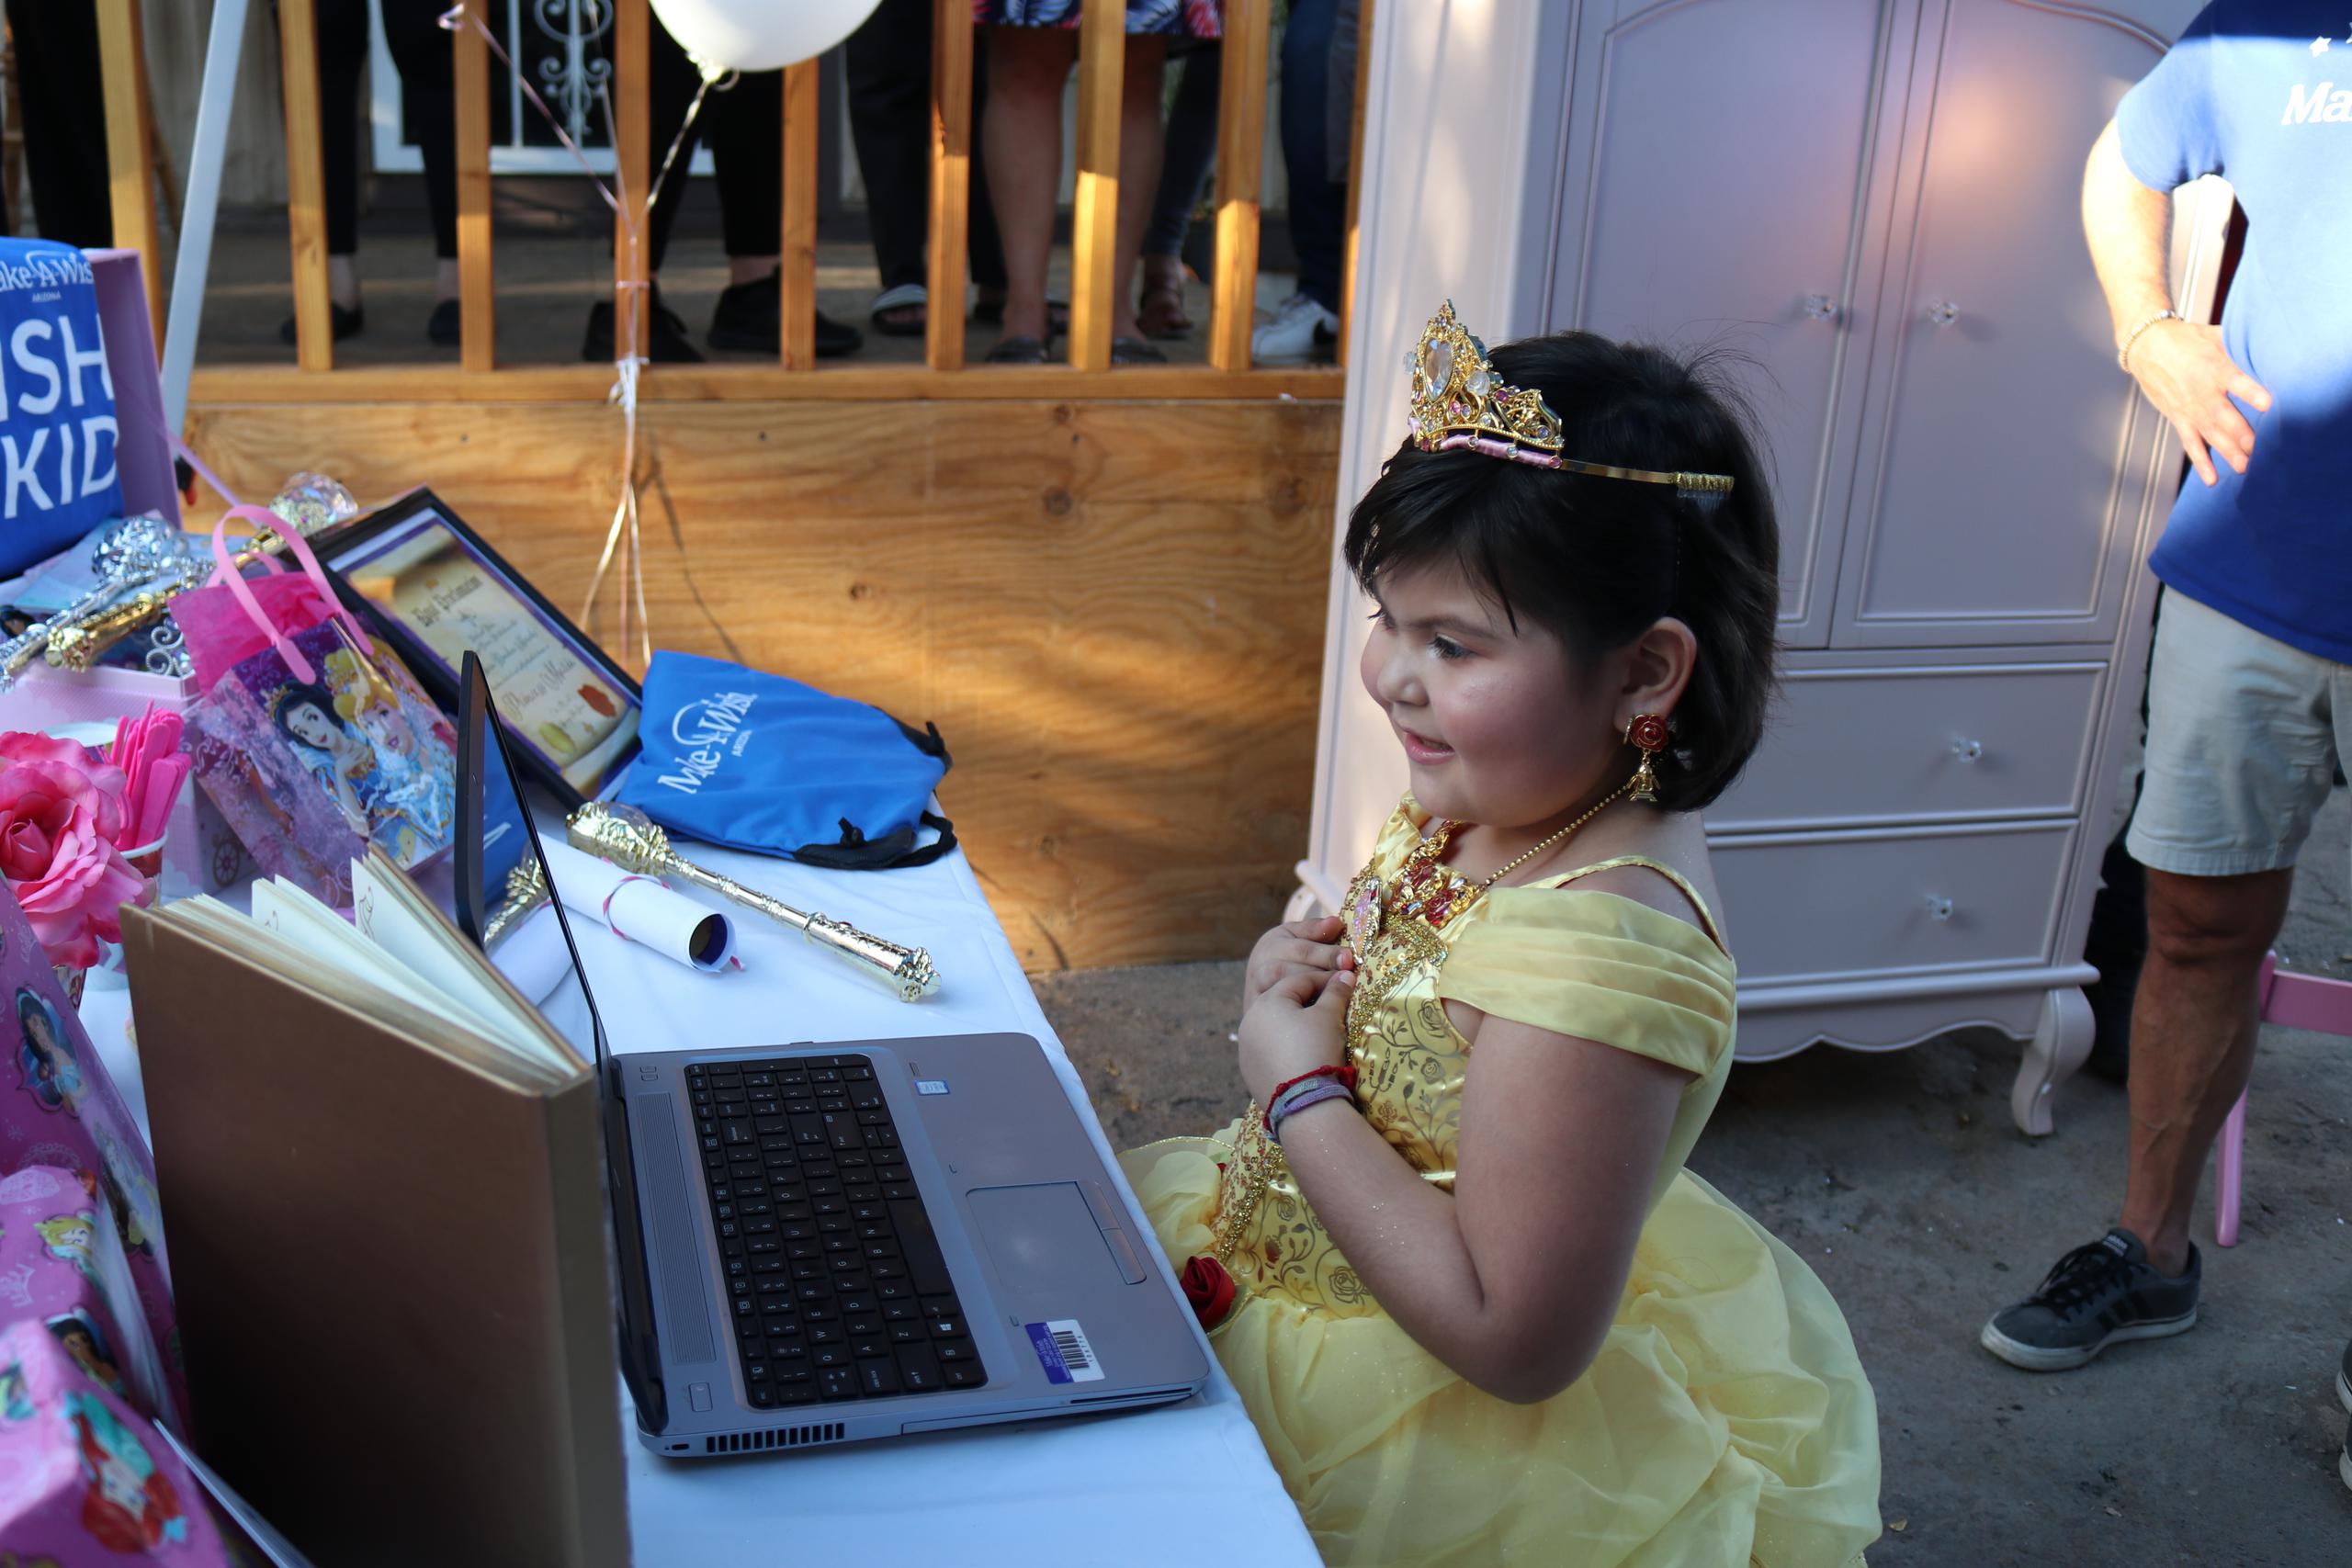 La pequeña pudo interactuar con la princesa en español, lo que le permitió disfrutar del momento a plenitud.